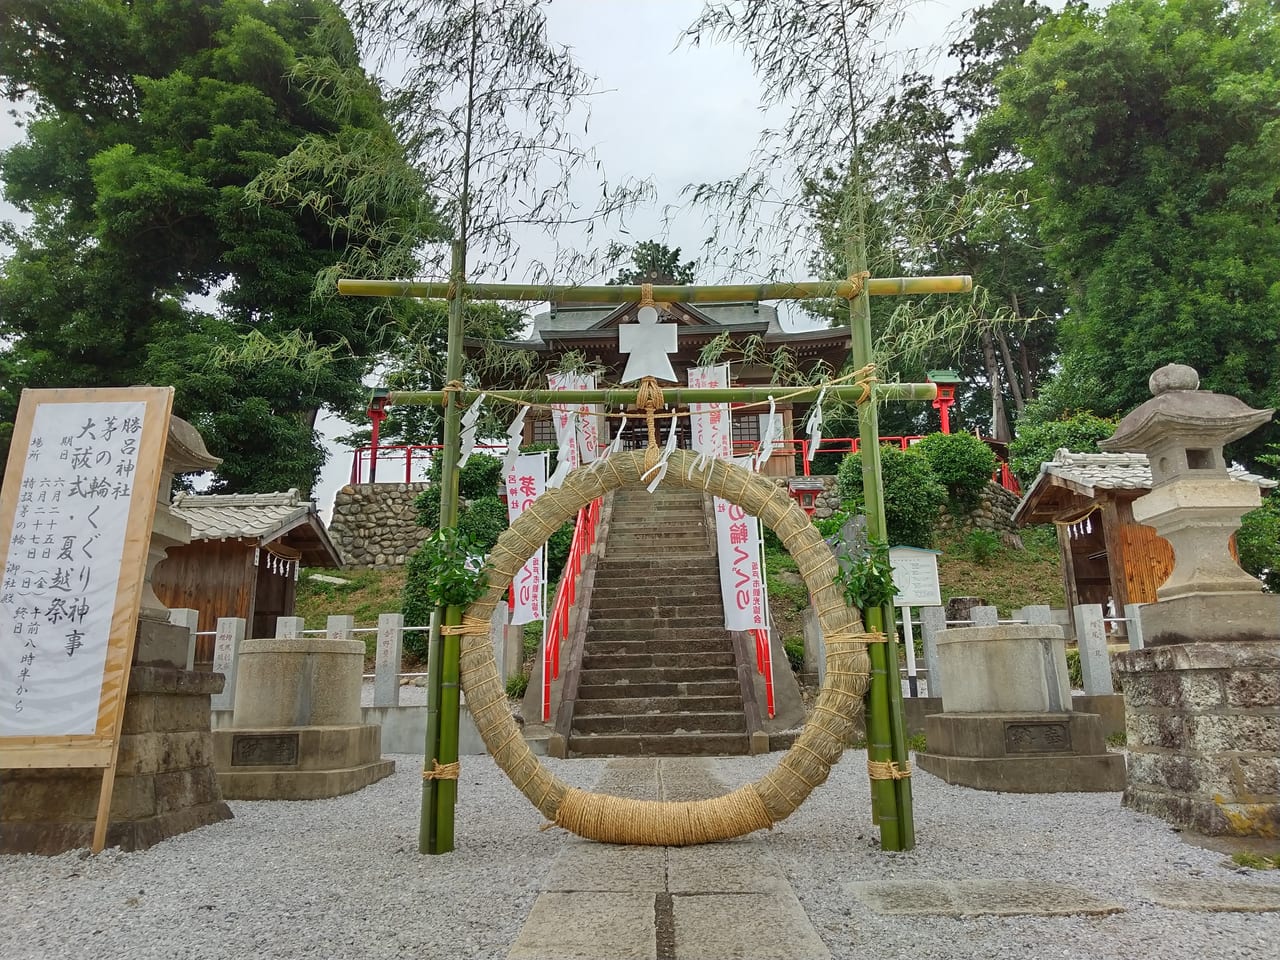 坂戸市 疫病退散にご利益があるかも 21年6月25日 金 27日 日 に勝呂神社で茅の輪くぐりが開催されます 号外net 坂戸市 鶴ヶ島市